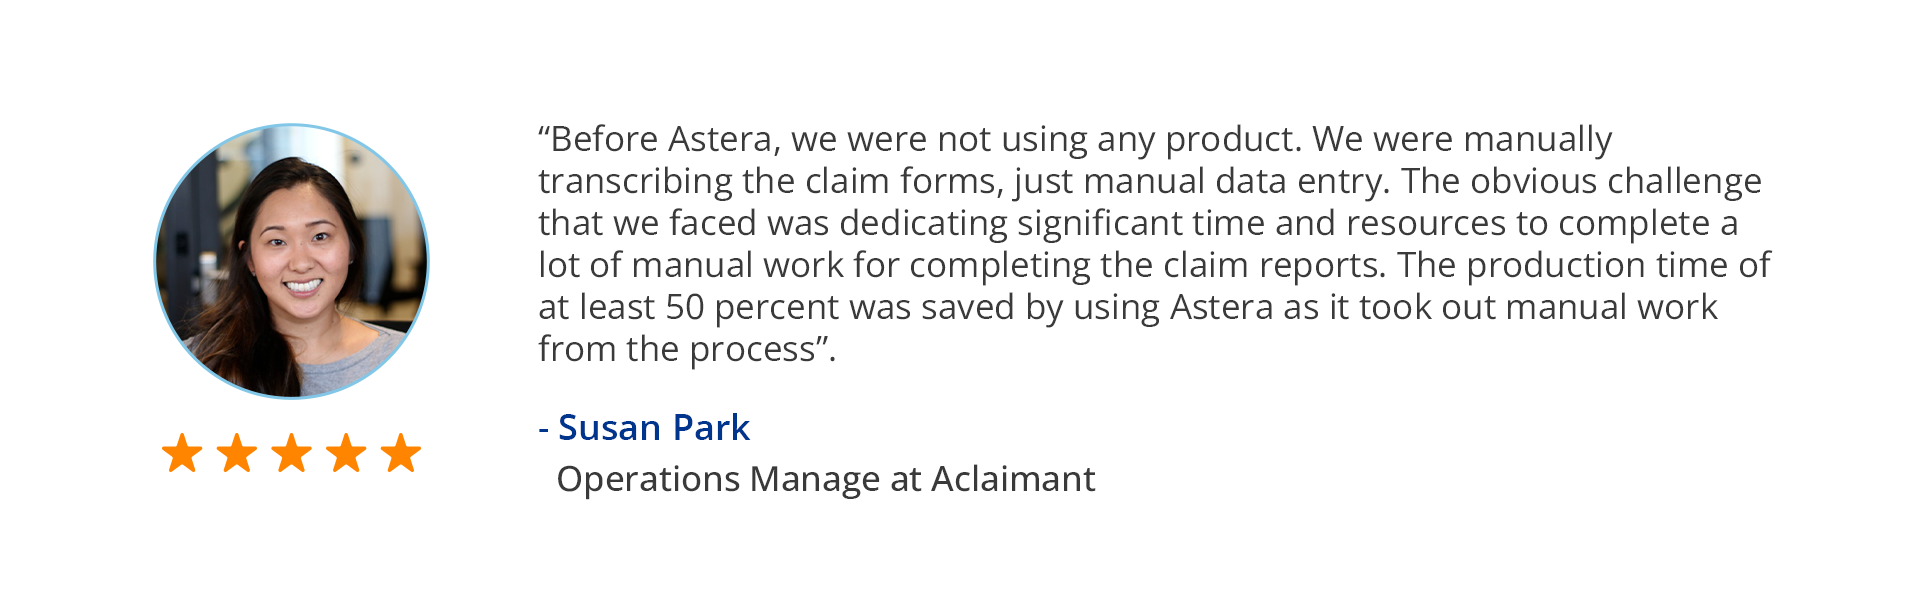 Astera Обзор клиентов для отзывов об обработке форм претензий.